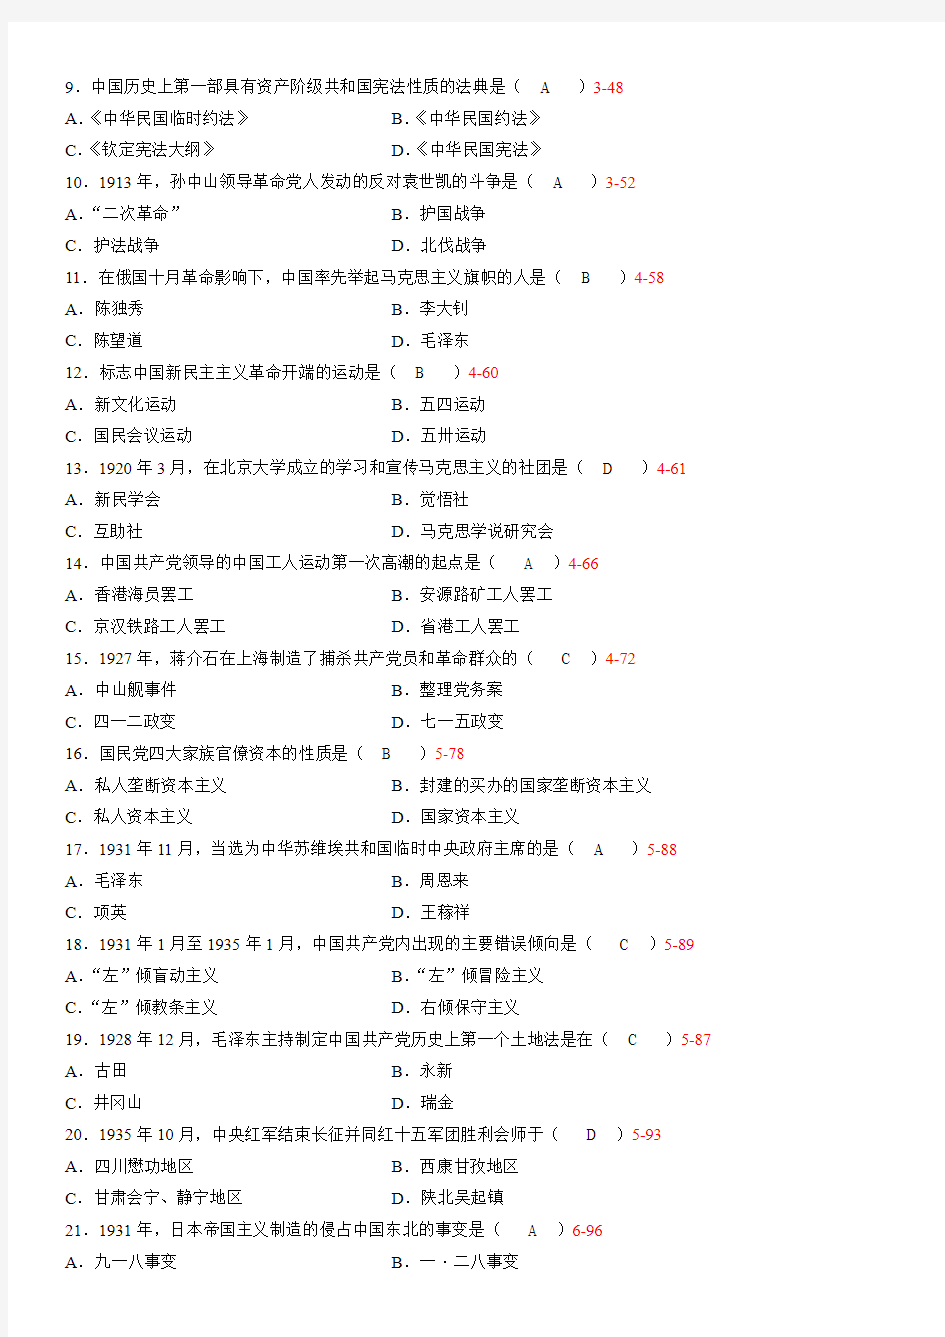 2013年10月自考《中国近现代史纲要》03708试卷和答案